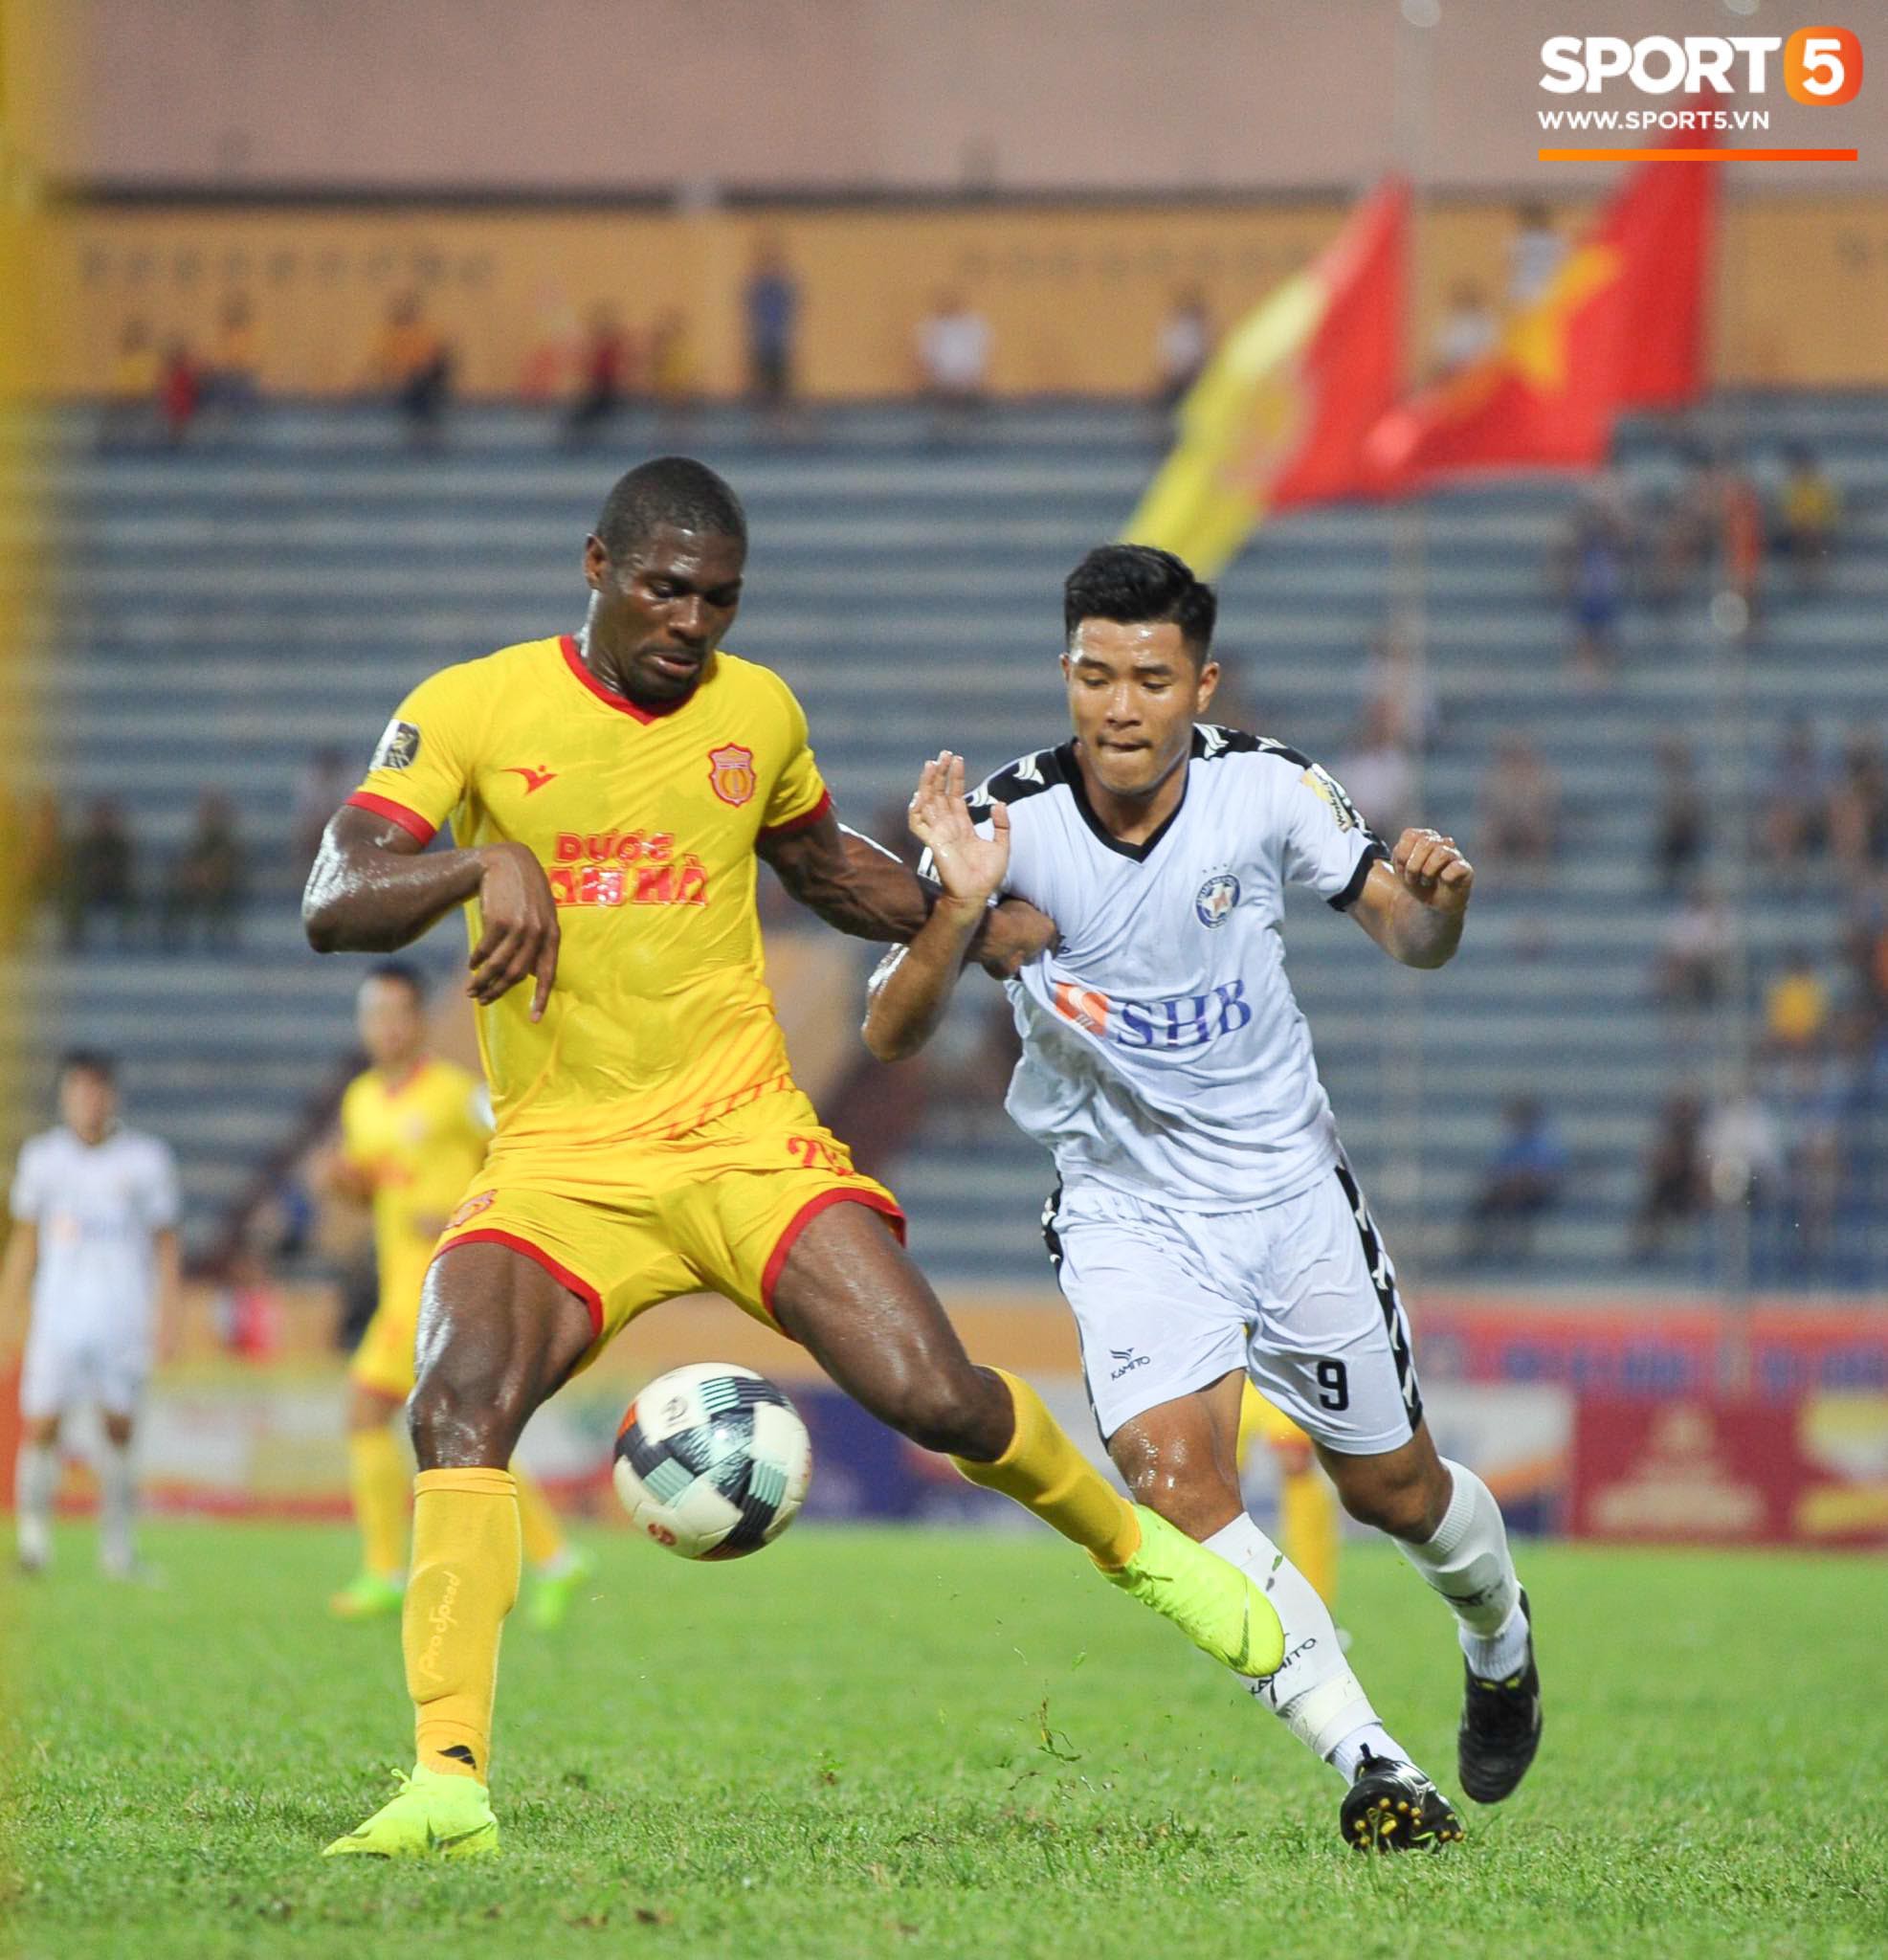 Đức Chinh không nỡ chia tay thầy Lee sau trận đấu với Nam Định tại vòng 13 V.League 2019 - Ảnh 1.